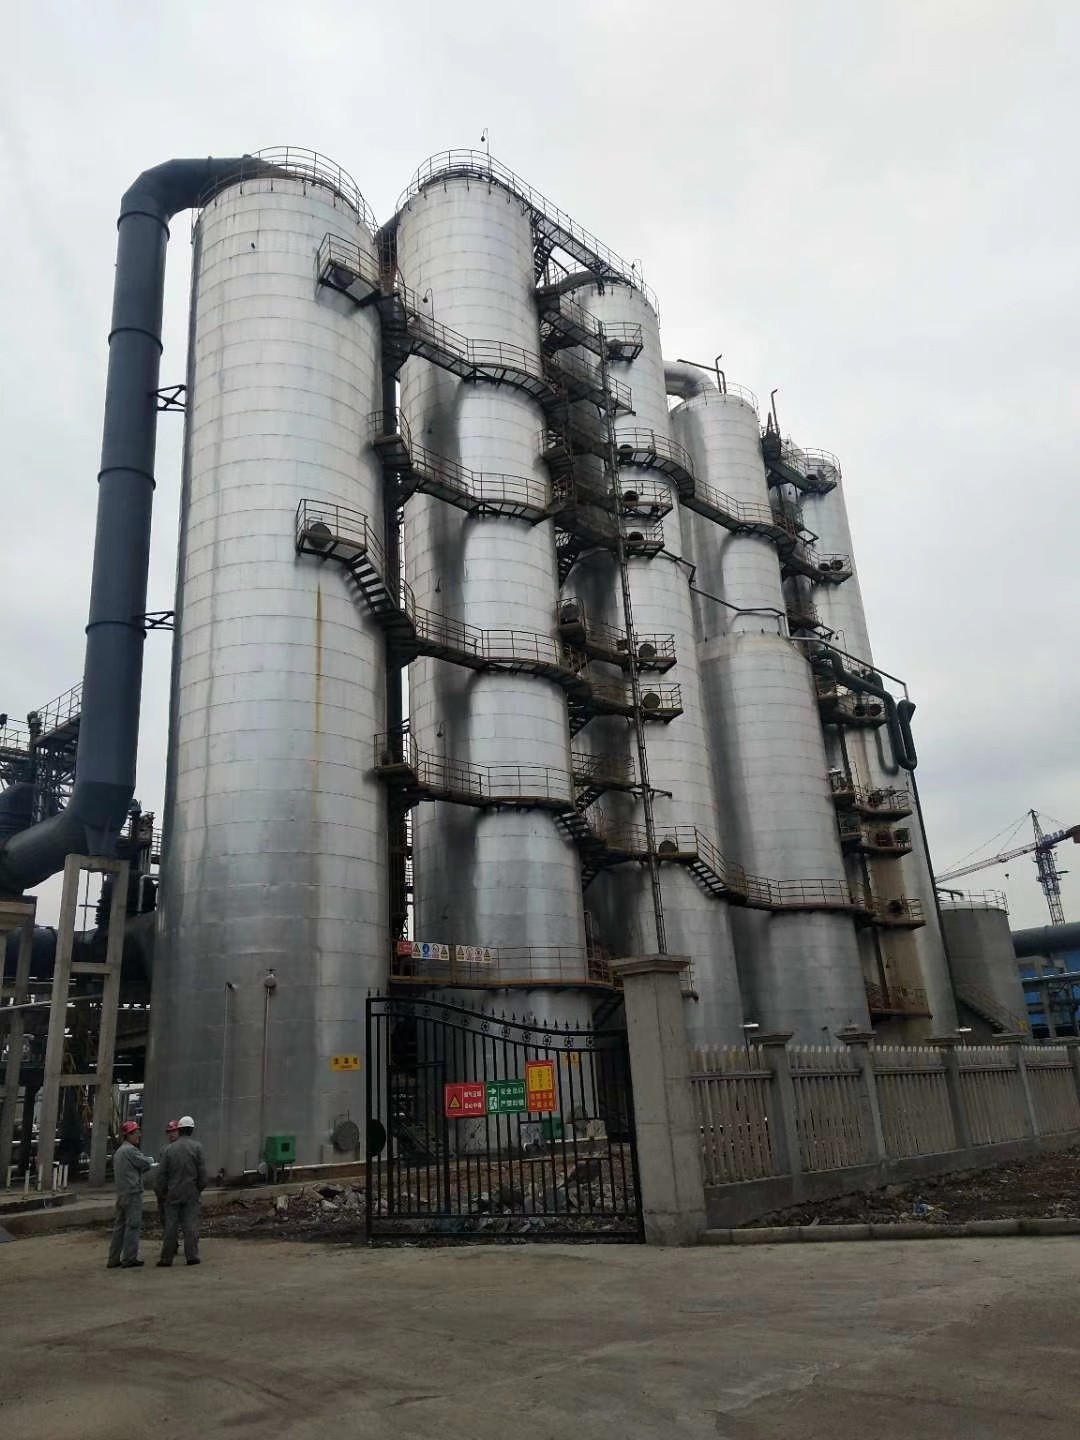 电厂脱硫塔厌氧罐保温施工队 管道白铁皮保温工程承包